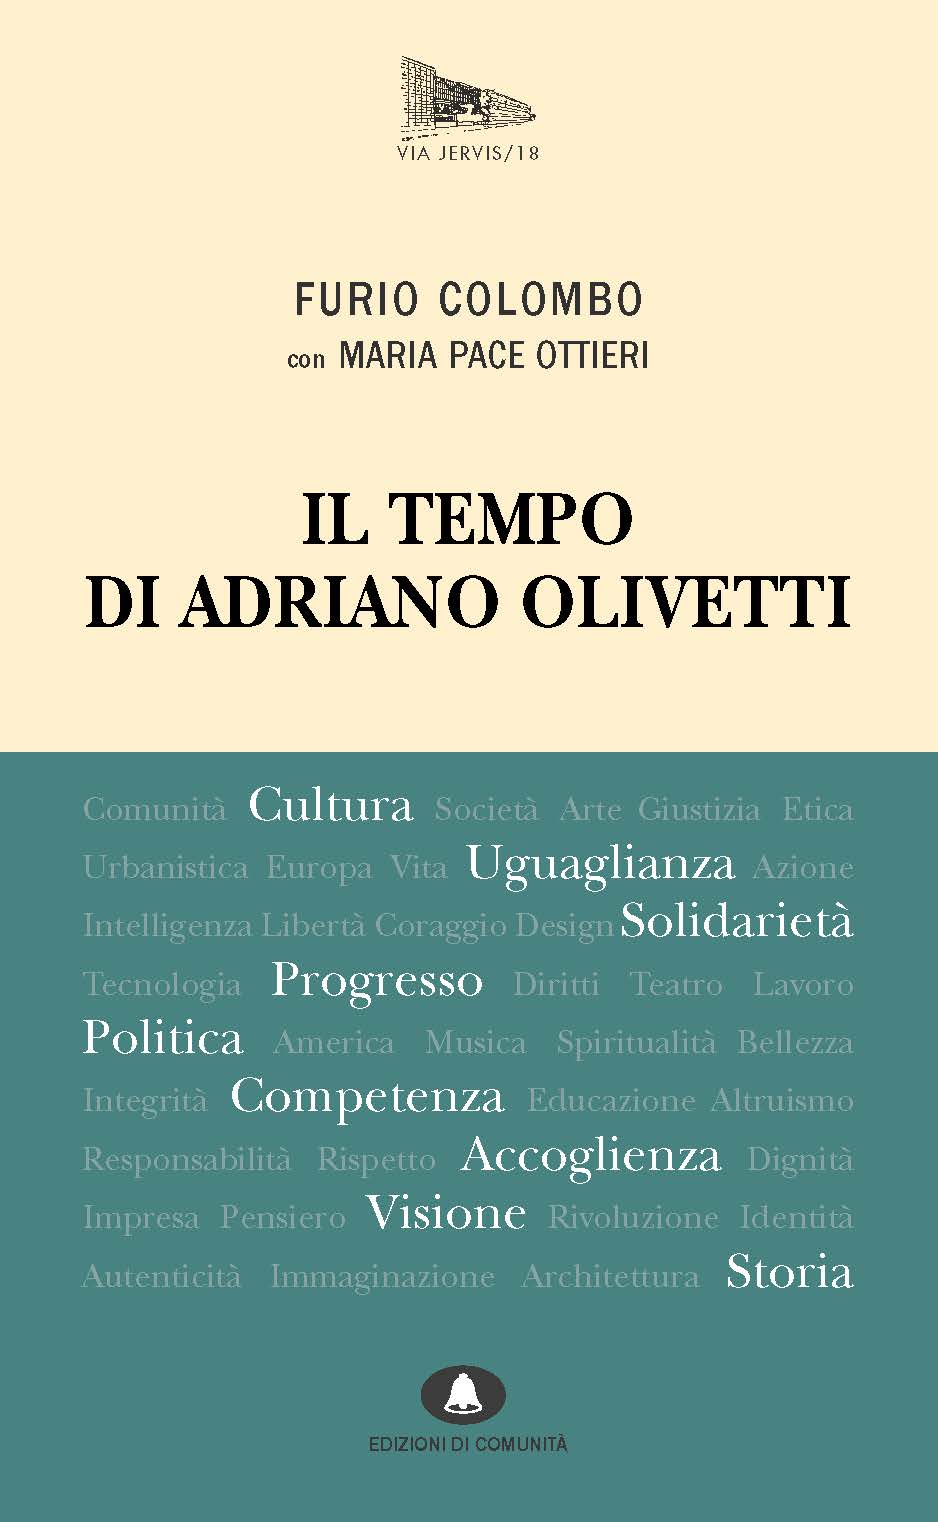 vj18-il-tempo-di-olivetti-cover-copia.jpg